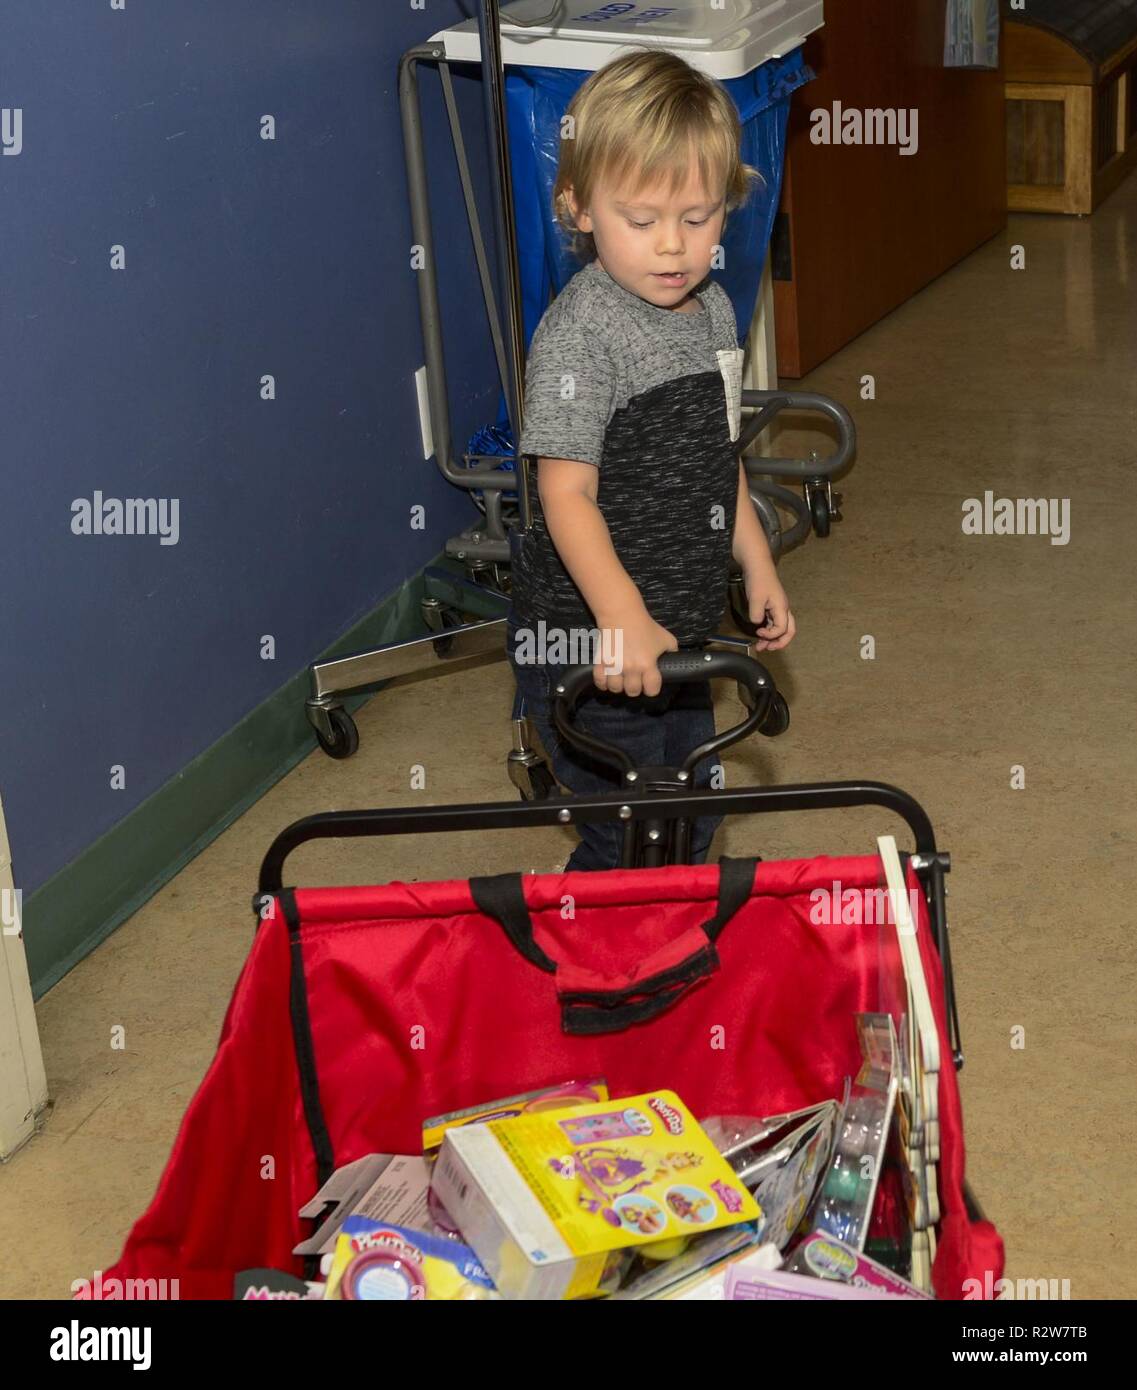 SAN DIEGO (Nov. 14, 2018) - Liam Weste, ein Patient an Naval Medical Center San Diegos (NMCSD) Pädiatrische Onkologie Abteilung, zieht seinen Wagen mit dem Spielzeug gefüllt, dass er plant, in der Gemeinde Spielzeugkiste in den Raum zu stellen. Liam und seine Familie waren die Vorteile eines jüngsten Geldbeschaffer und beschlossen, wieder in die Klinik, die so viel für sie getan hat. Liam wählte das Spielzeug, er glaubte, daß die Kinder möchte und setzte sie in die Spielzeugkiste für andere Kinder nach der Behandlung zu erhalten. Stockfoto